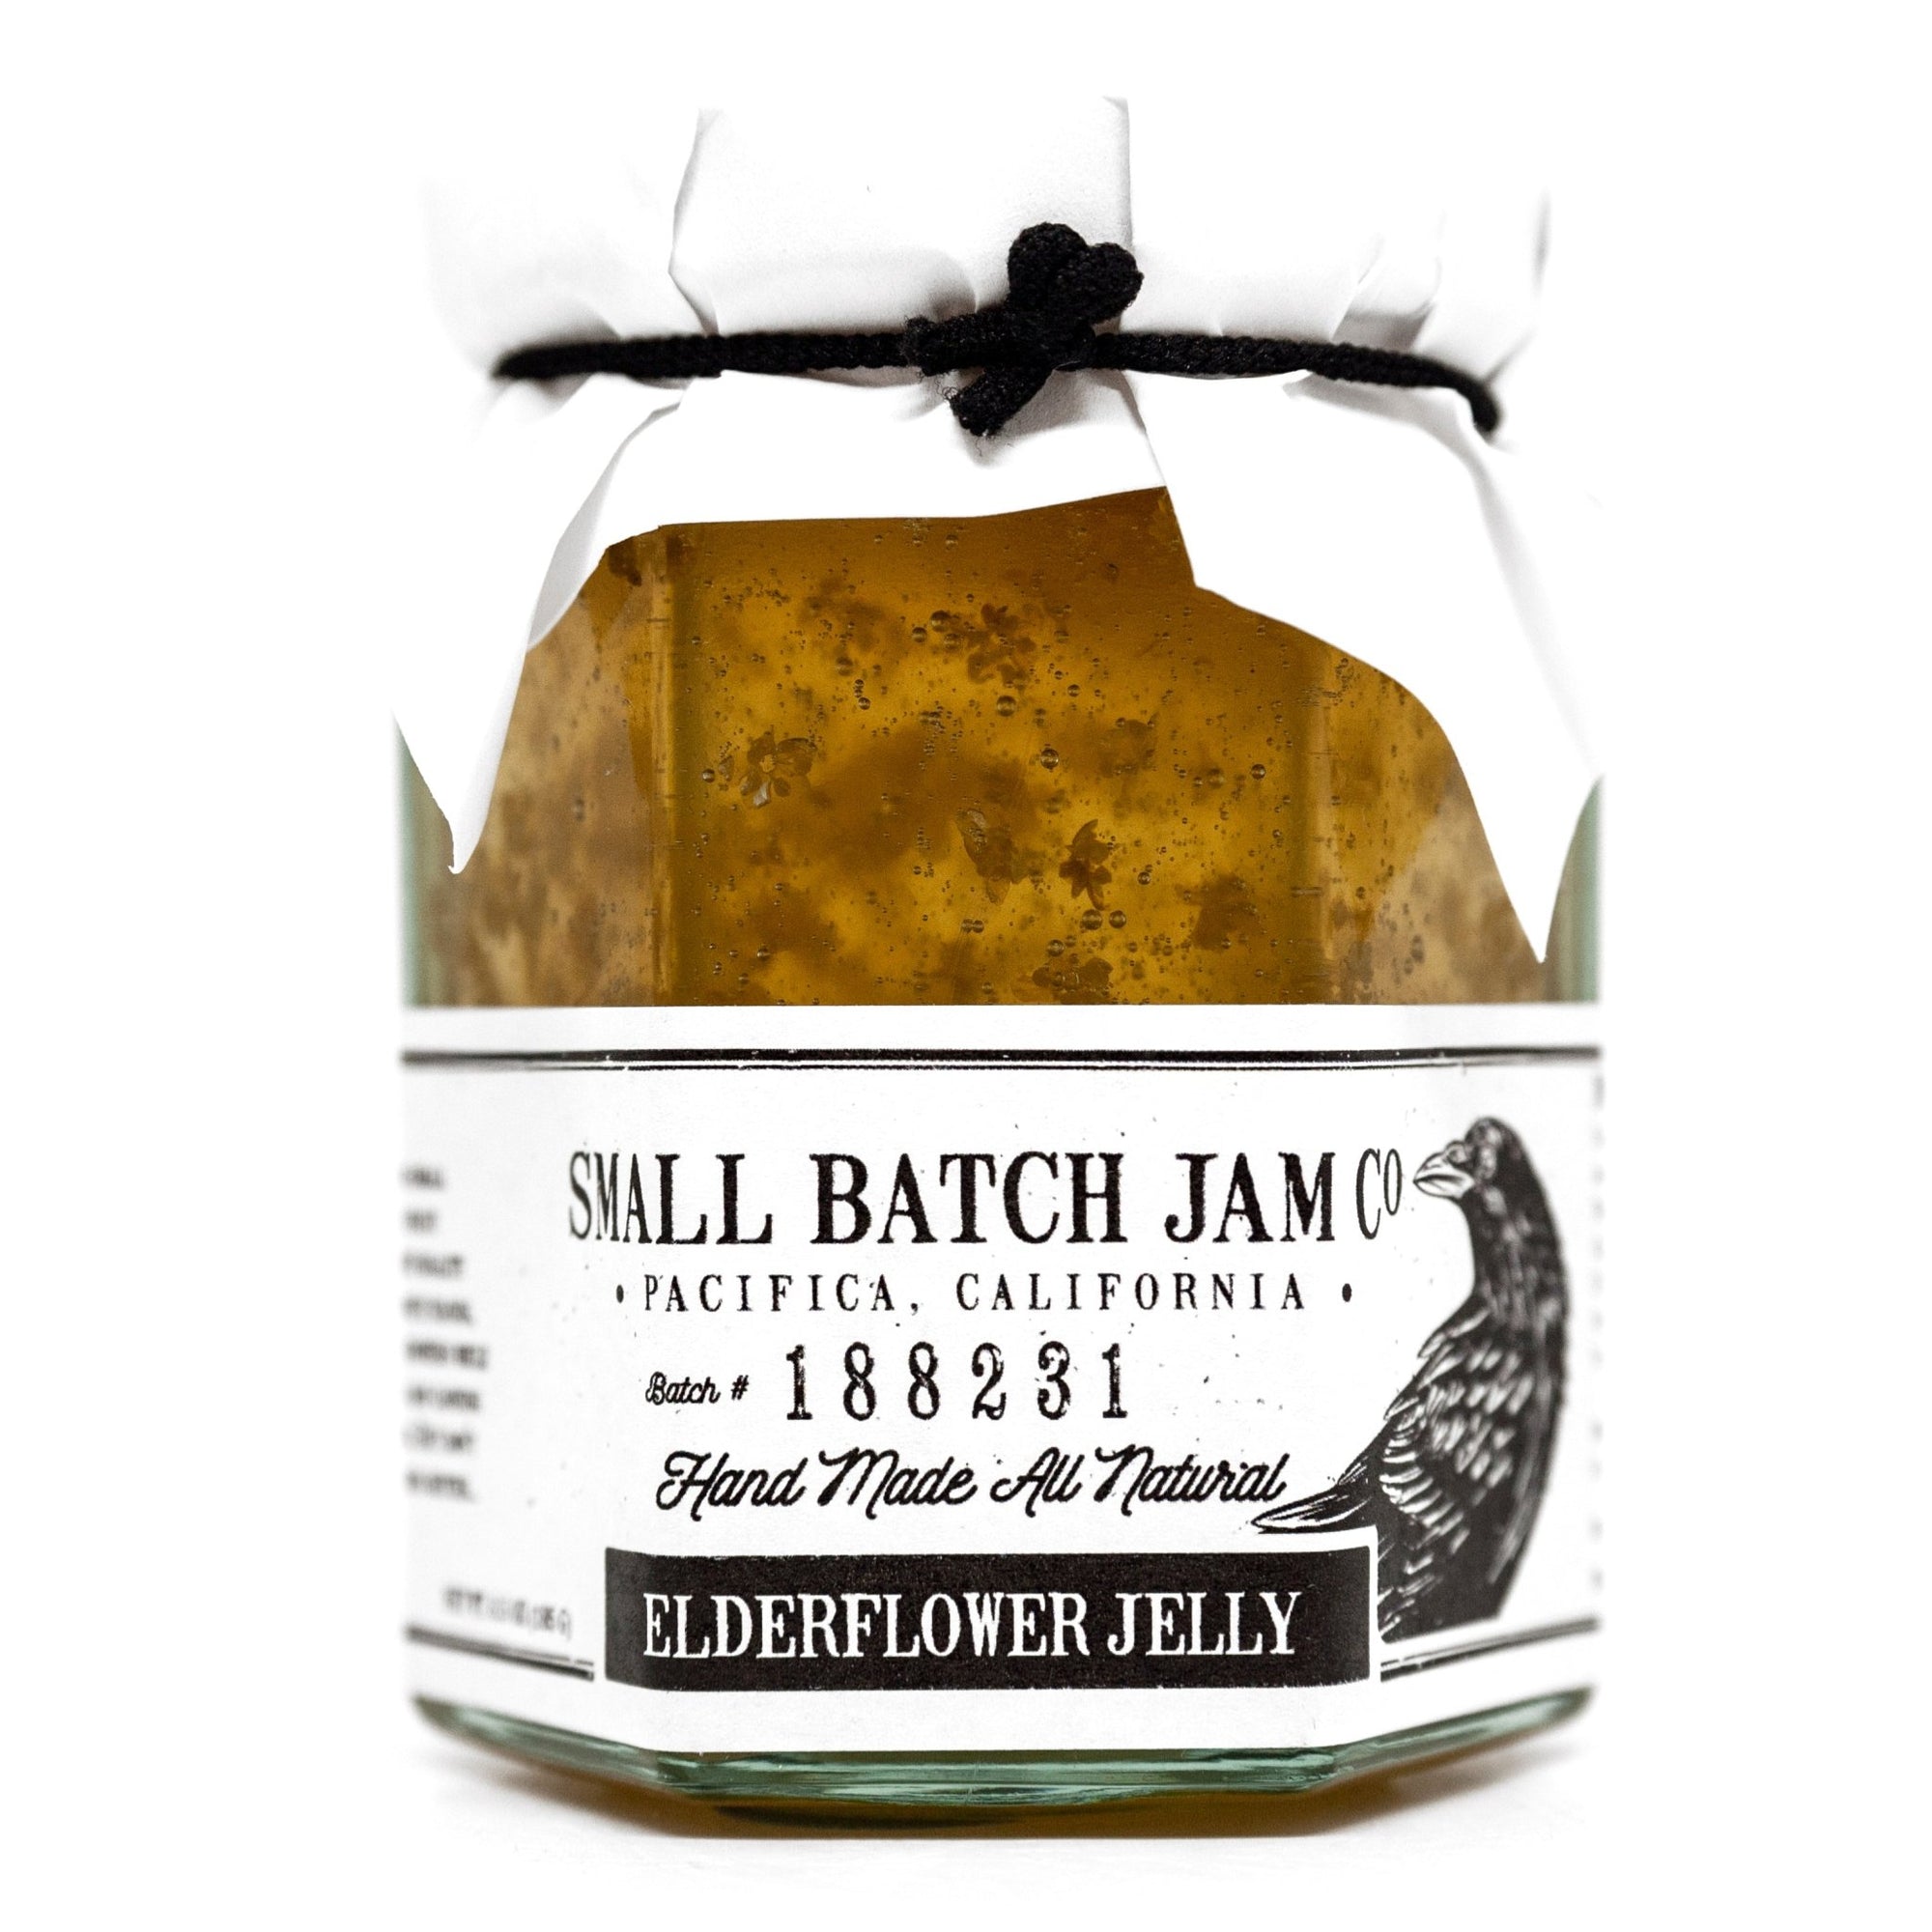 Elderflower Jelly - Small Batch Jam Co